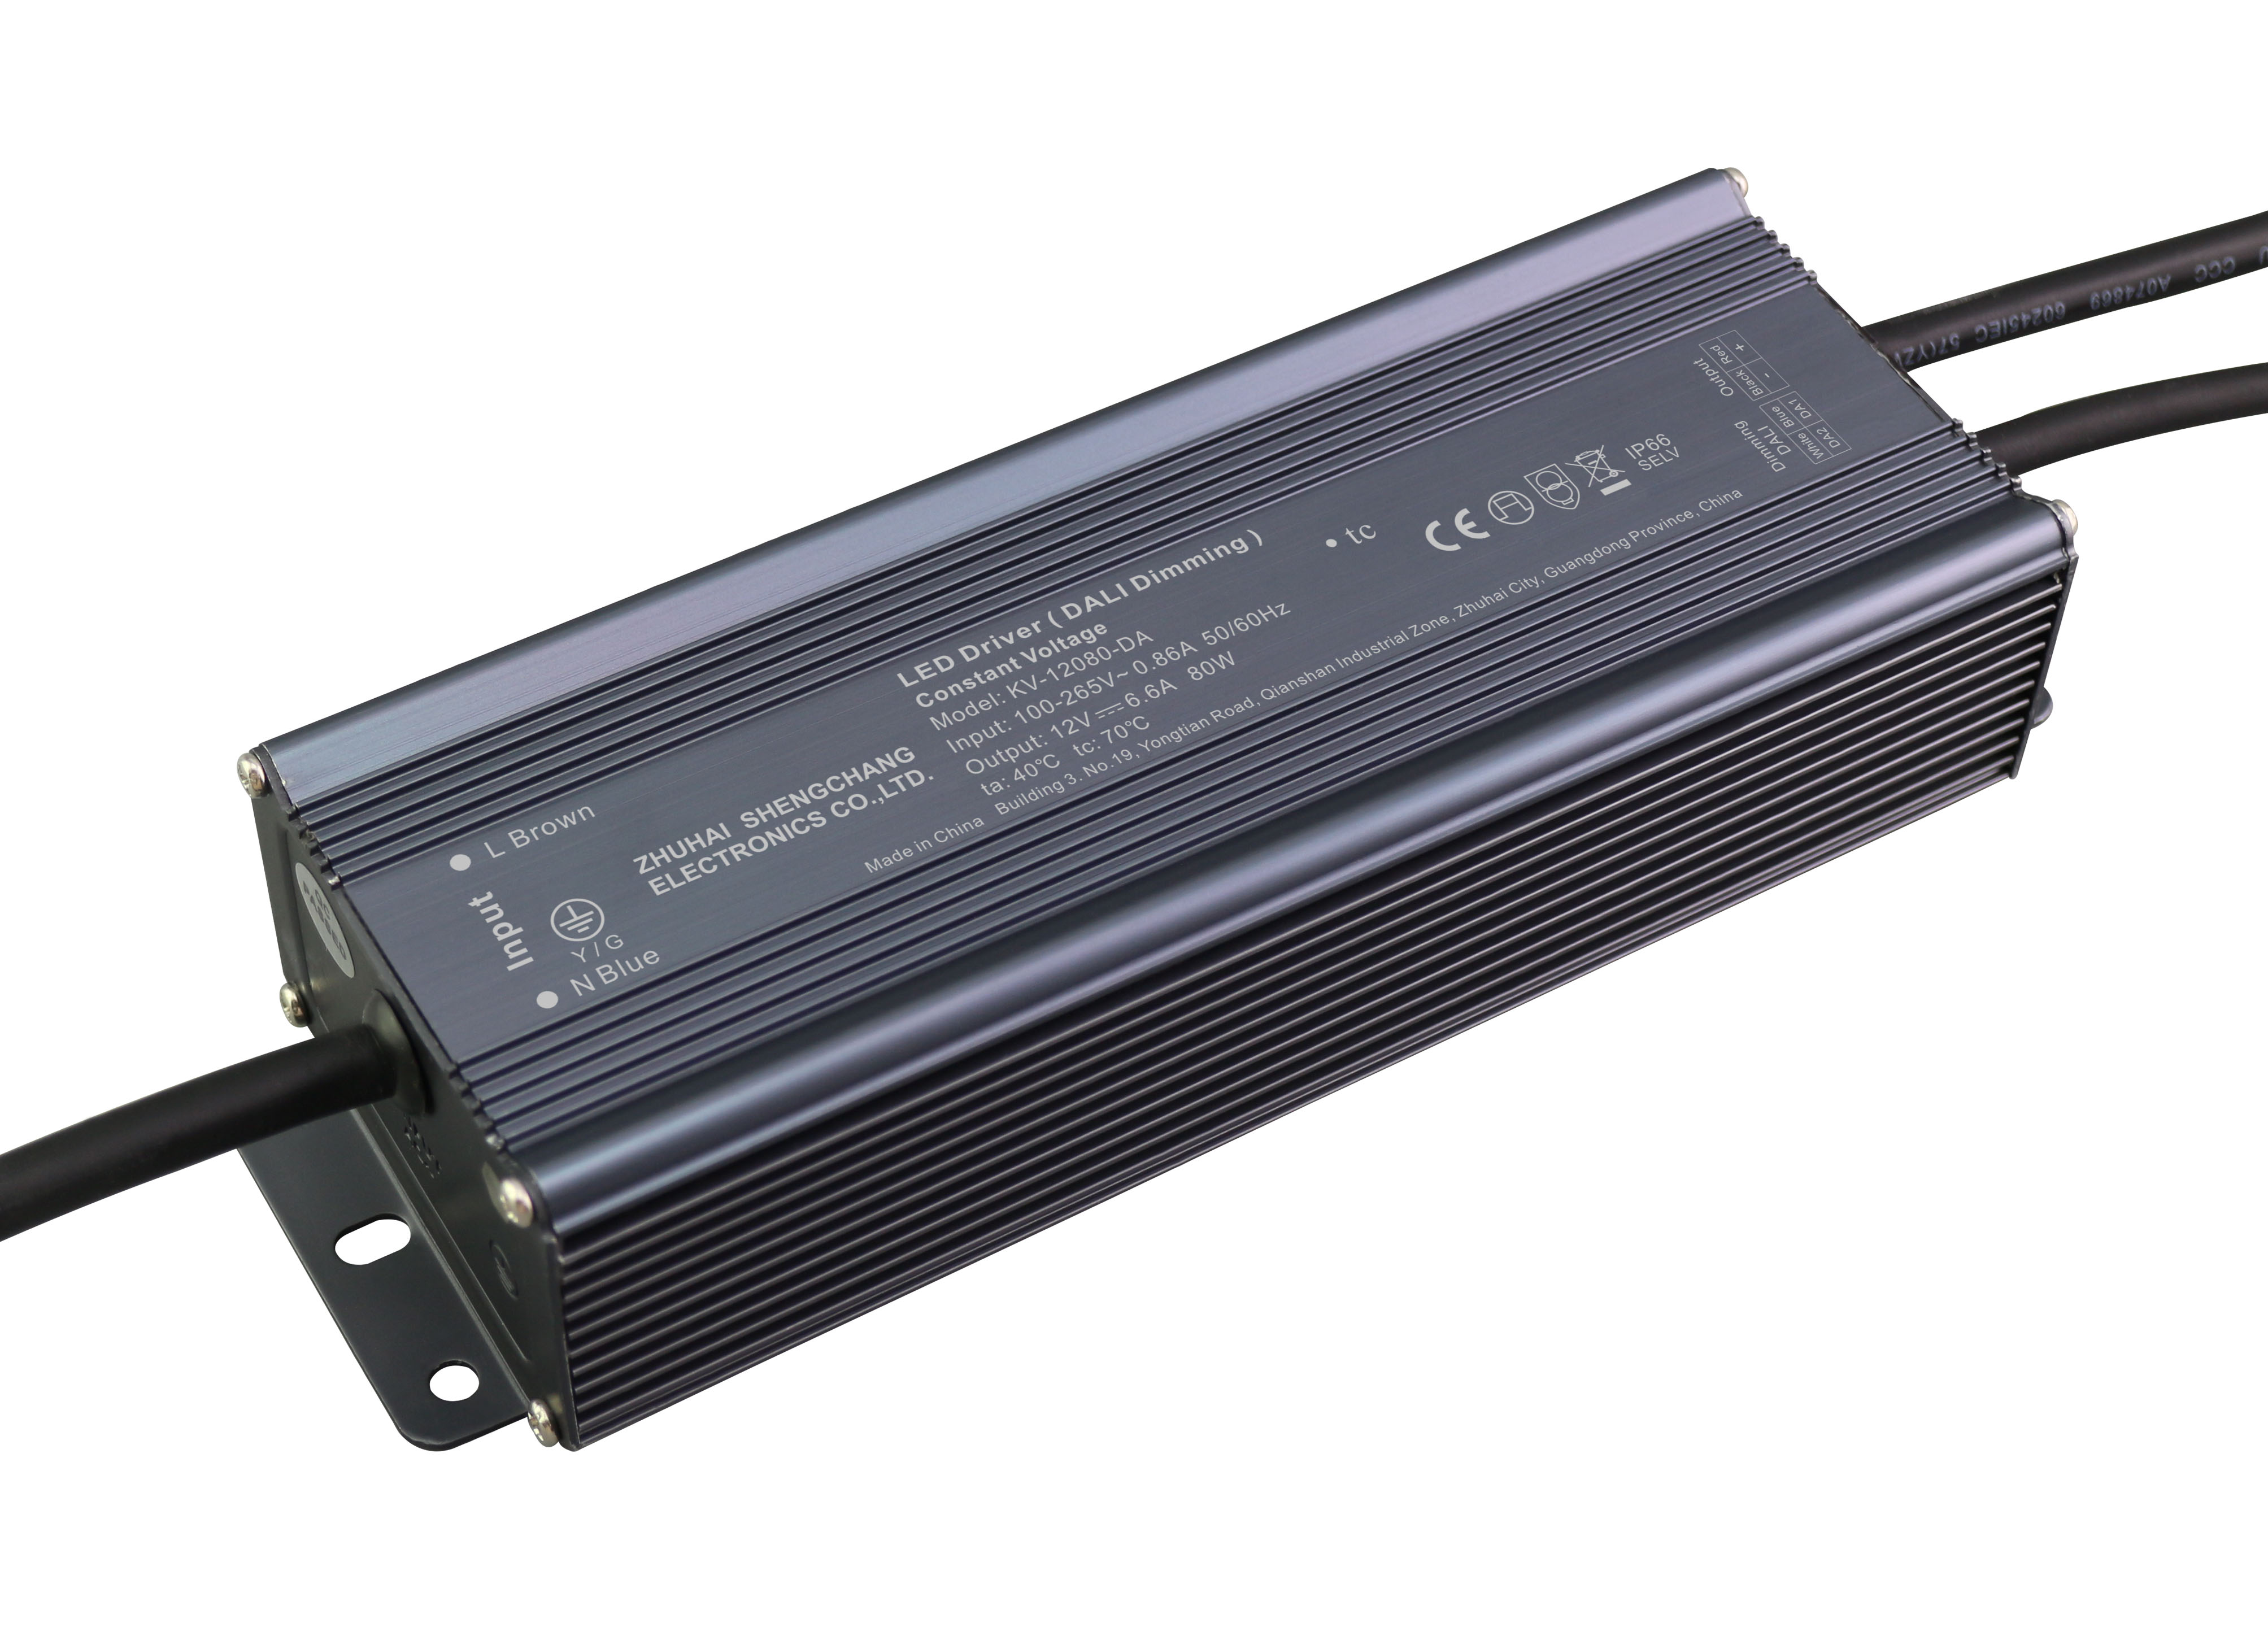 KV-DA Series 80W DALI constant voltage dimmable LED driver